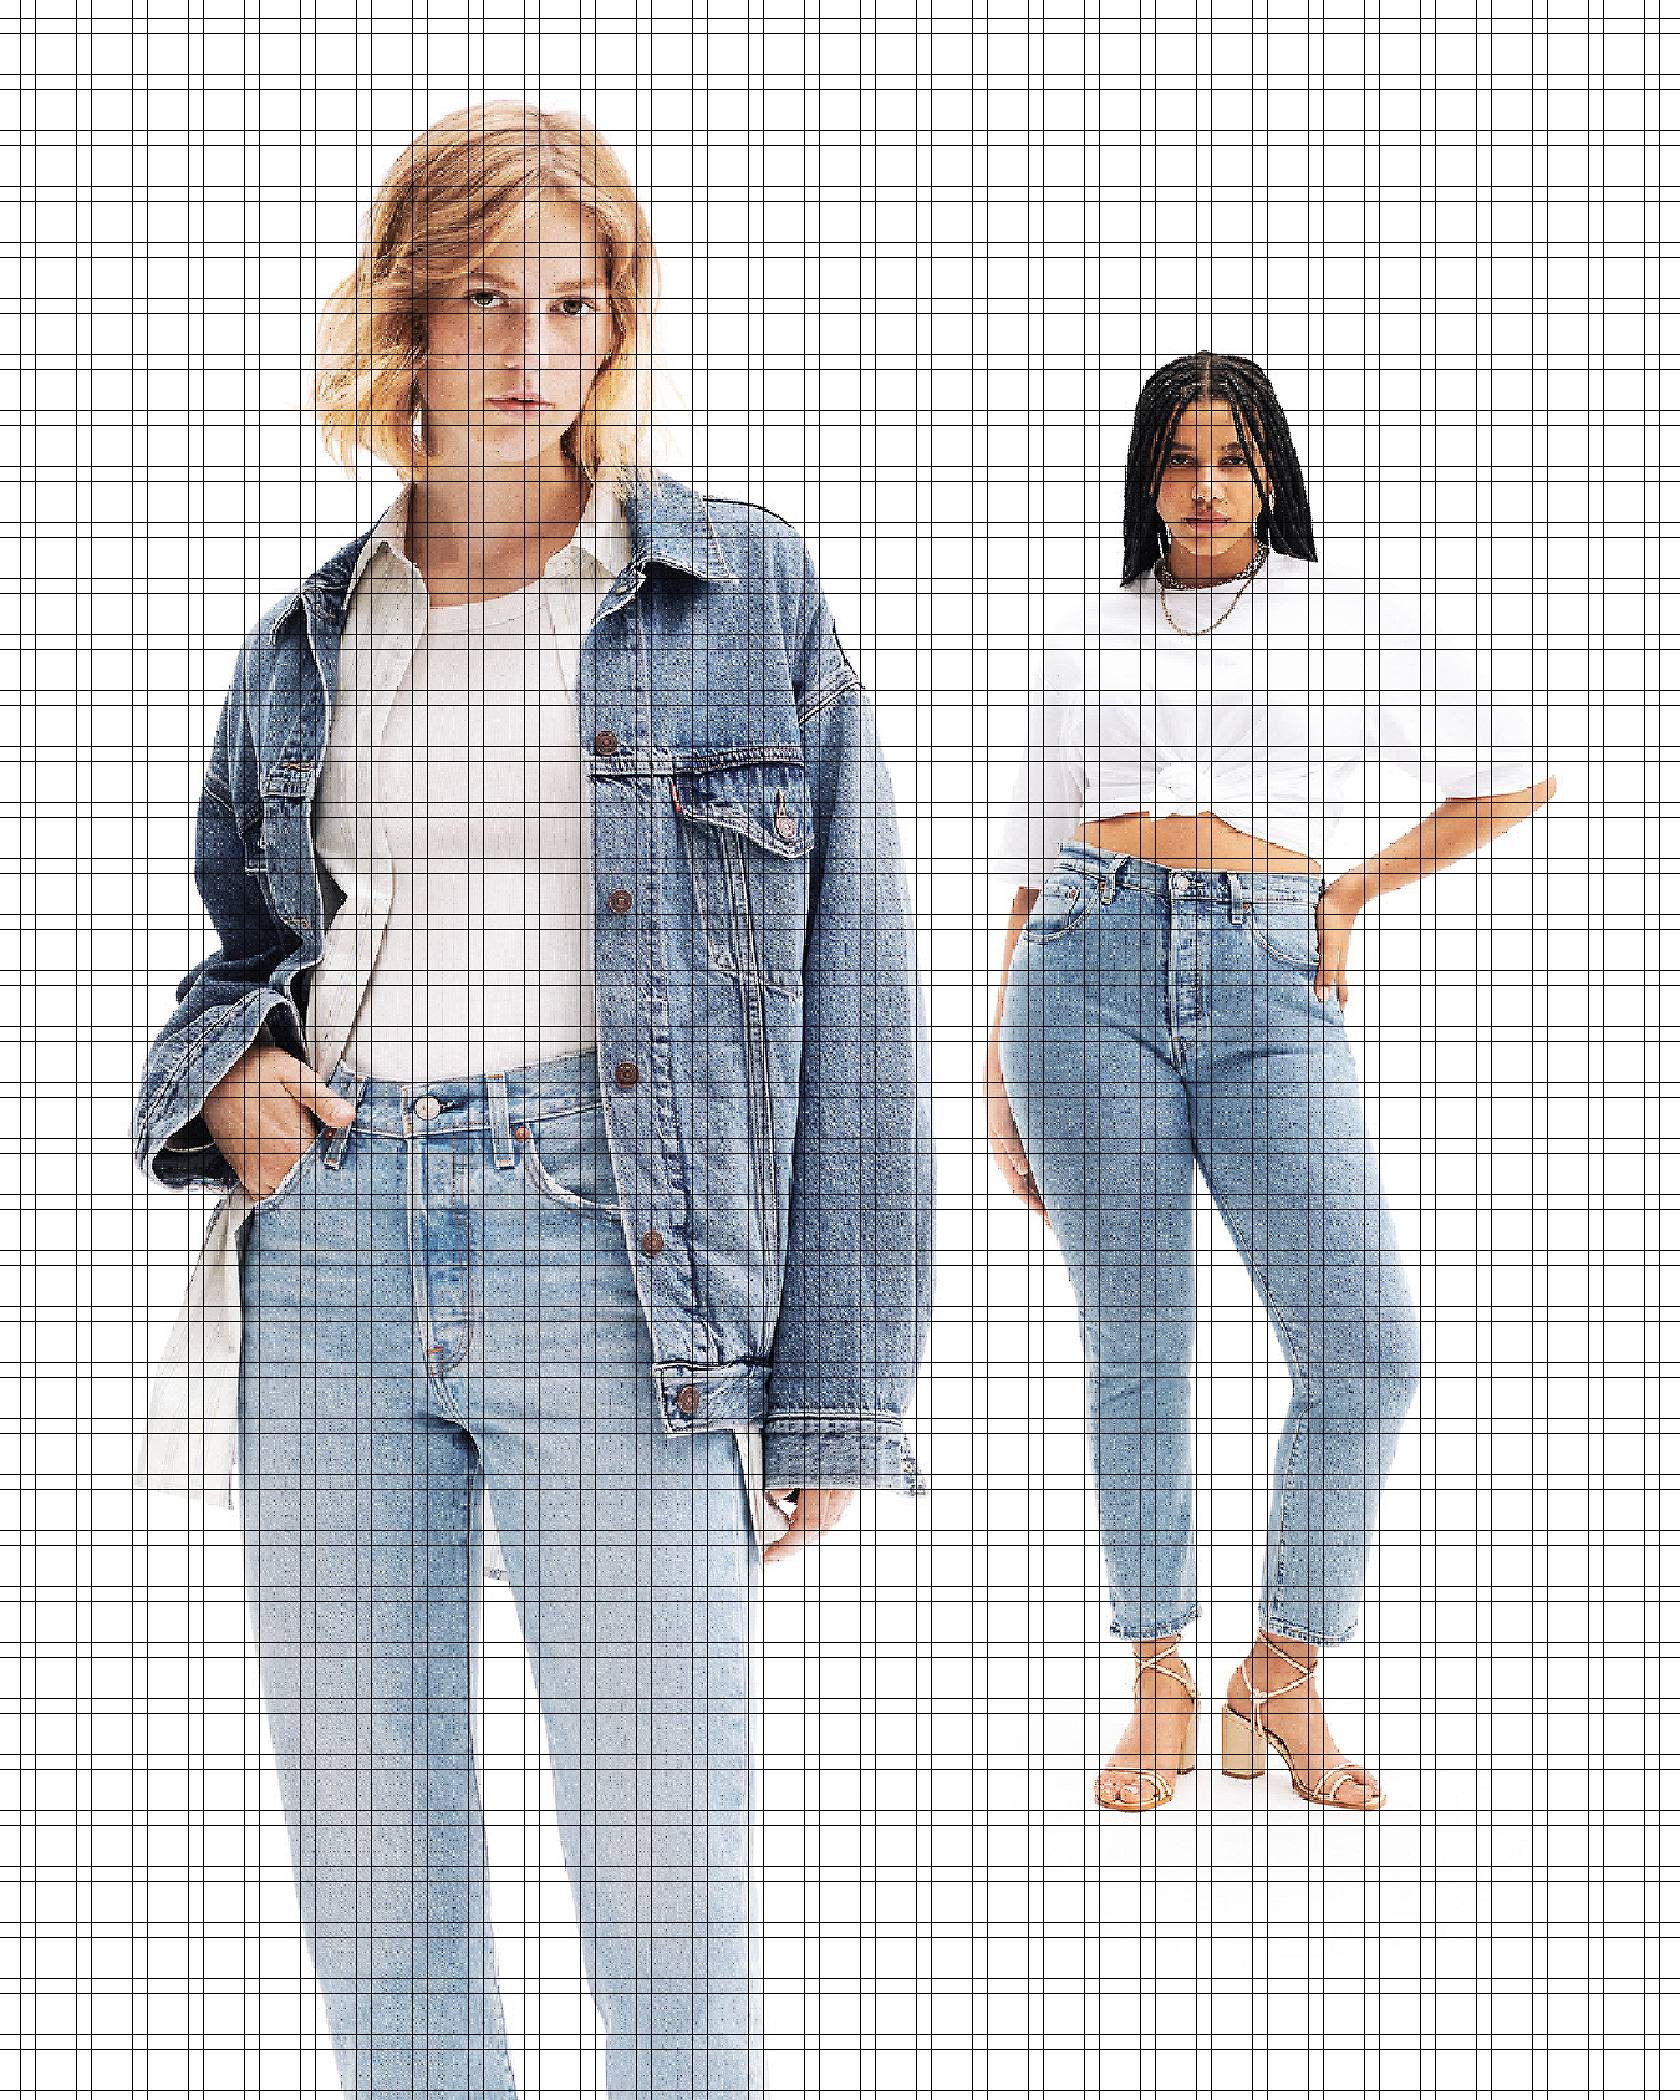 Women's Jeans Guide